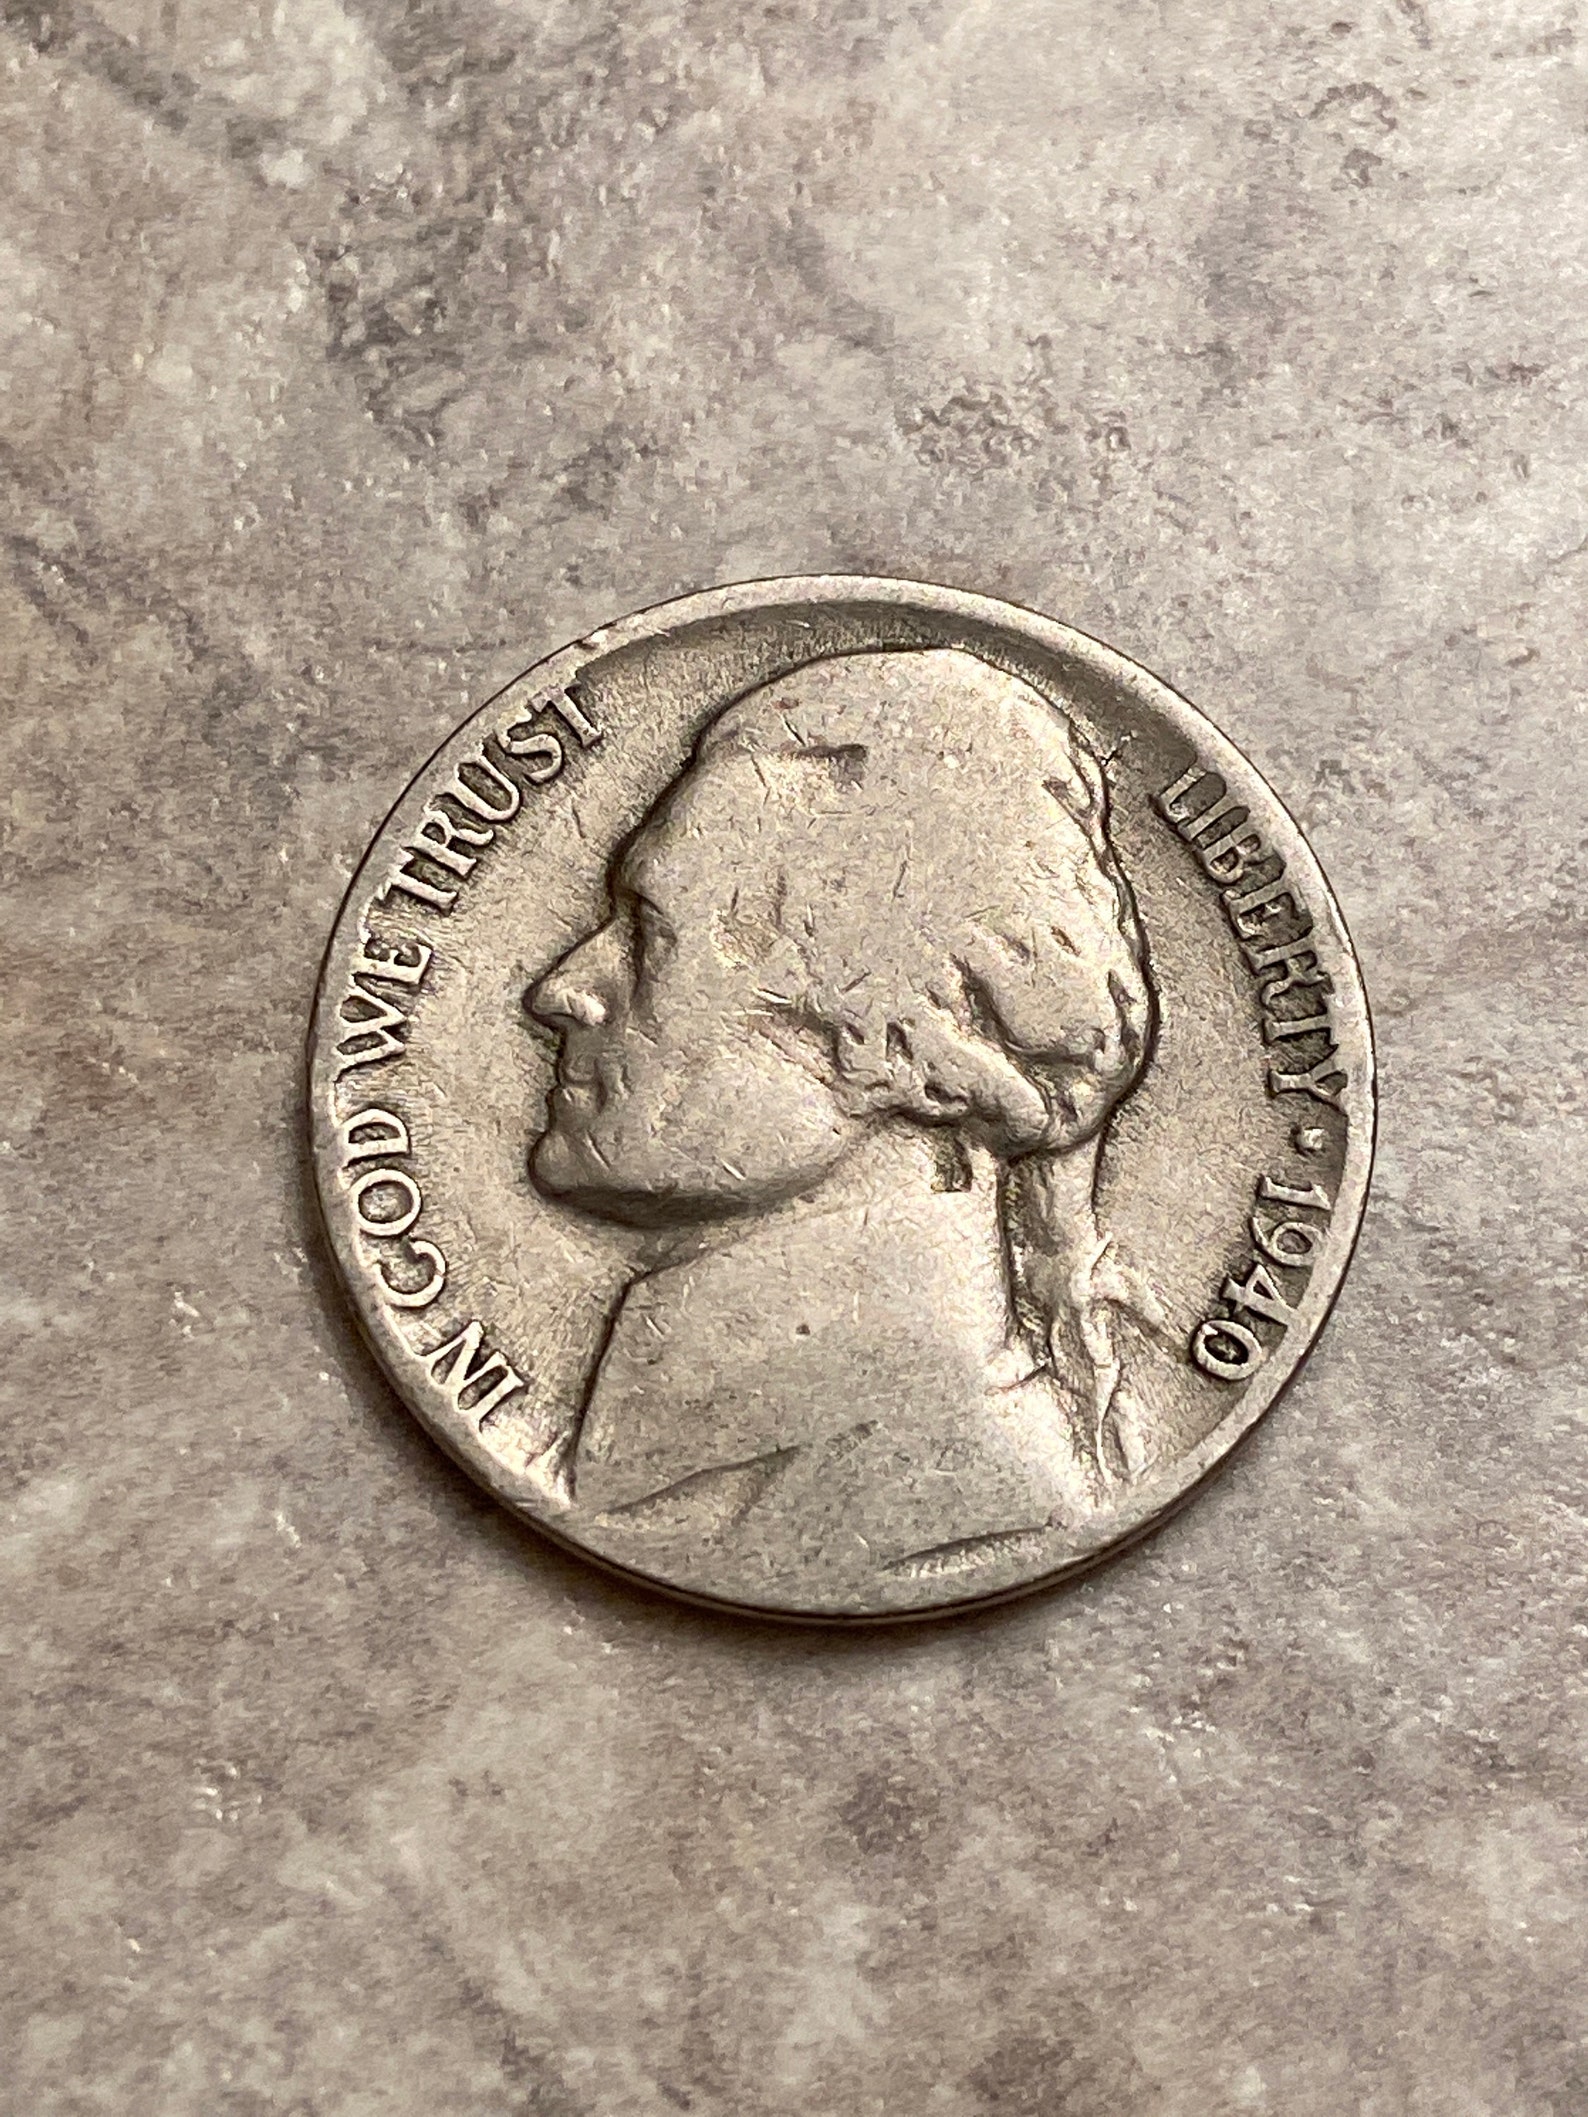 Rare 1940 Nickel No Mint Mark Etsy